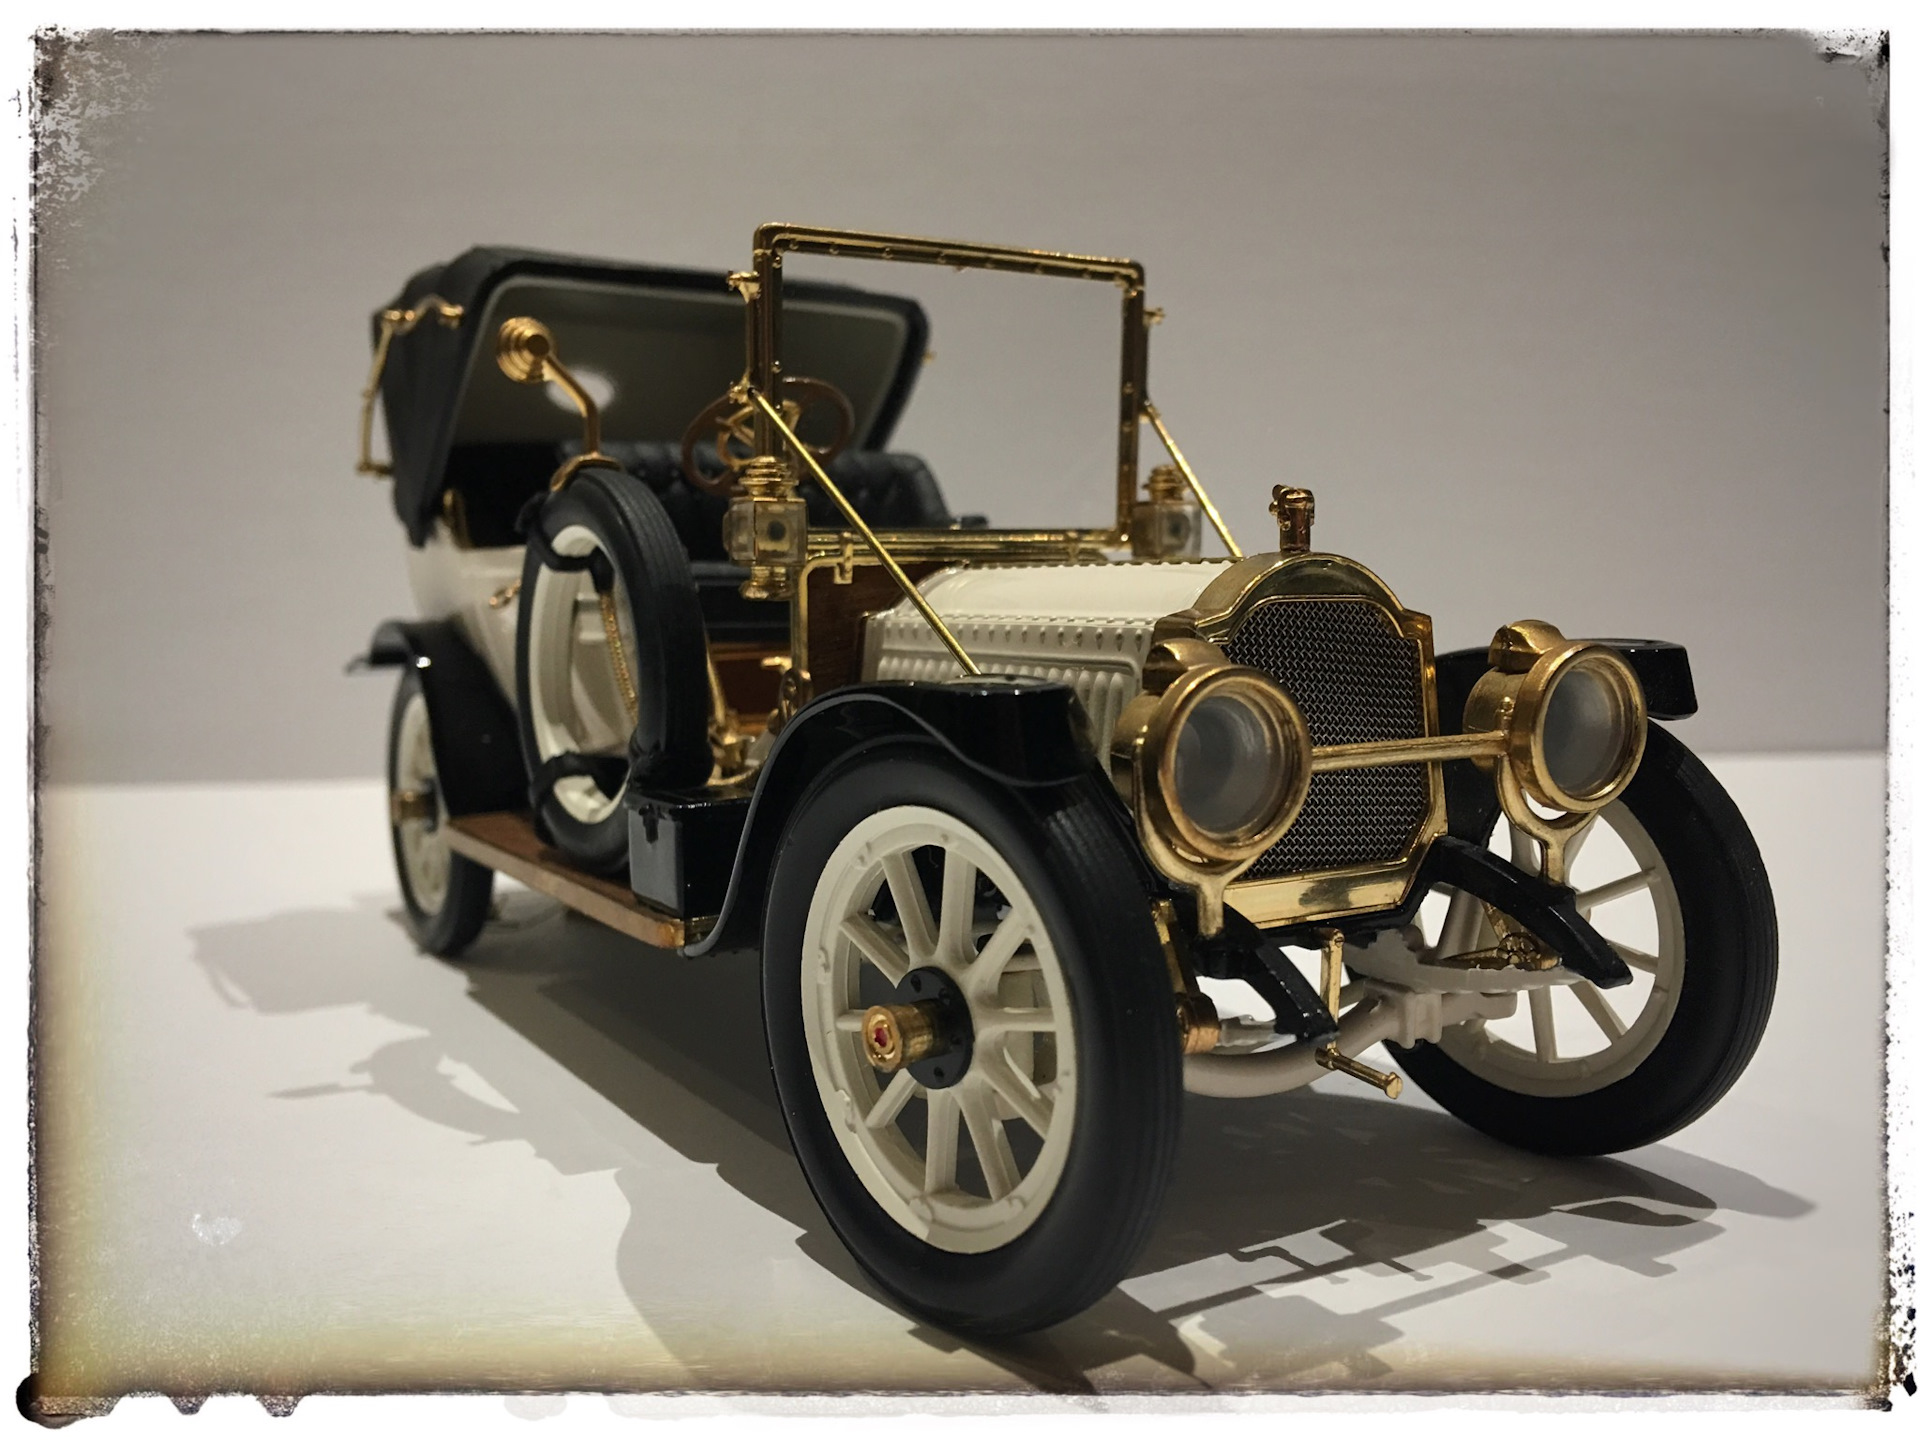 Packard 1912